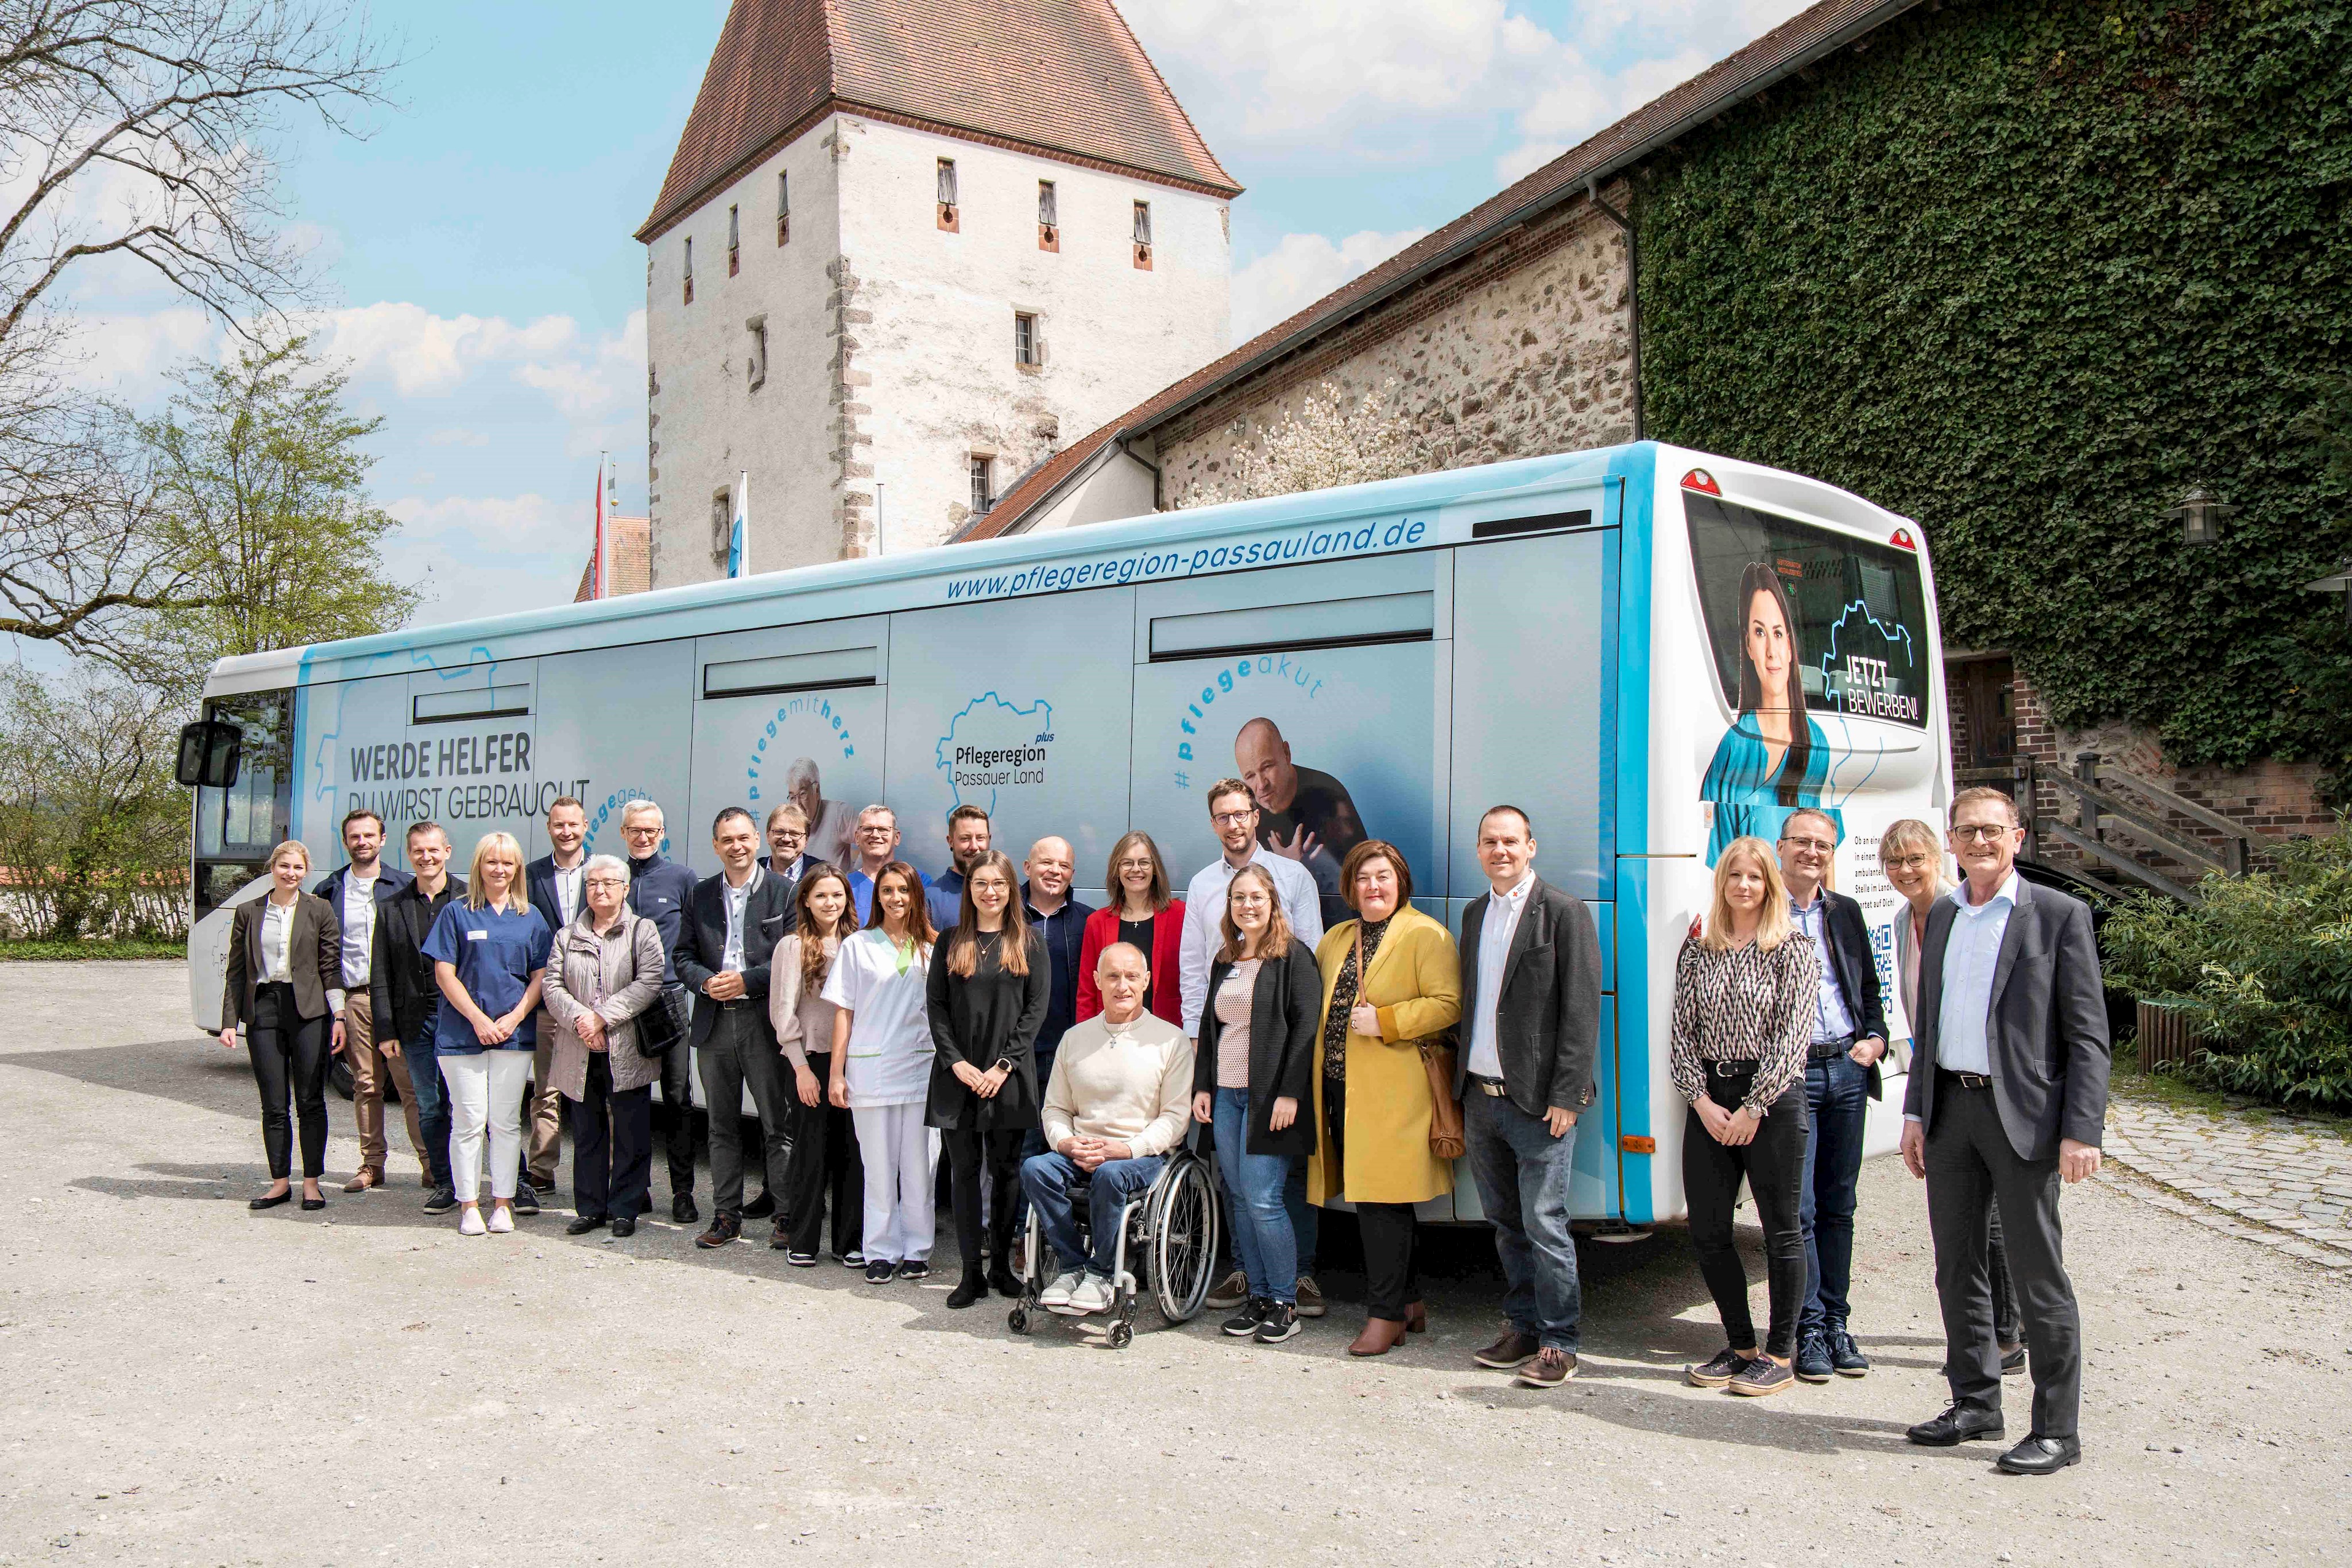 Sie alle haben mitgewirkt bei der Gestaltung des neuen Pflegebusses und beim Fotoshooting. Landrat Raimund Kneidinger (8.v.l.) und Geschäftsstellenleiterin der Gesundheitsregion Plus Passauer Land Lisa Fraunhofer dankten den Akteuren für deren Beitrag.